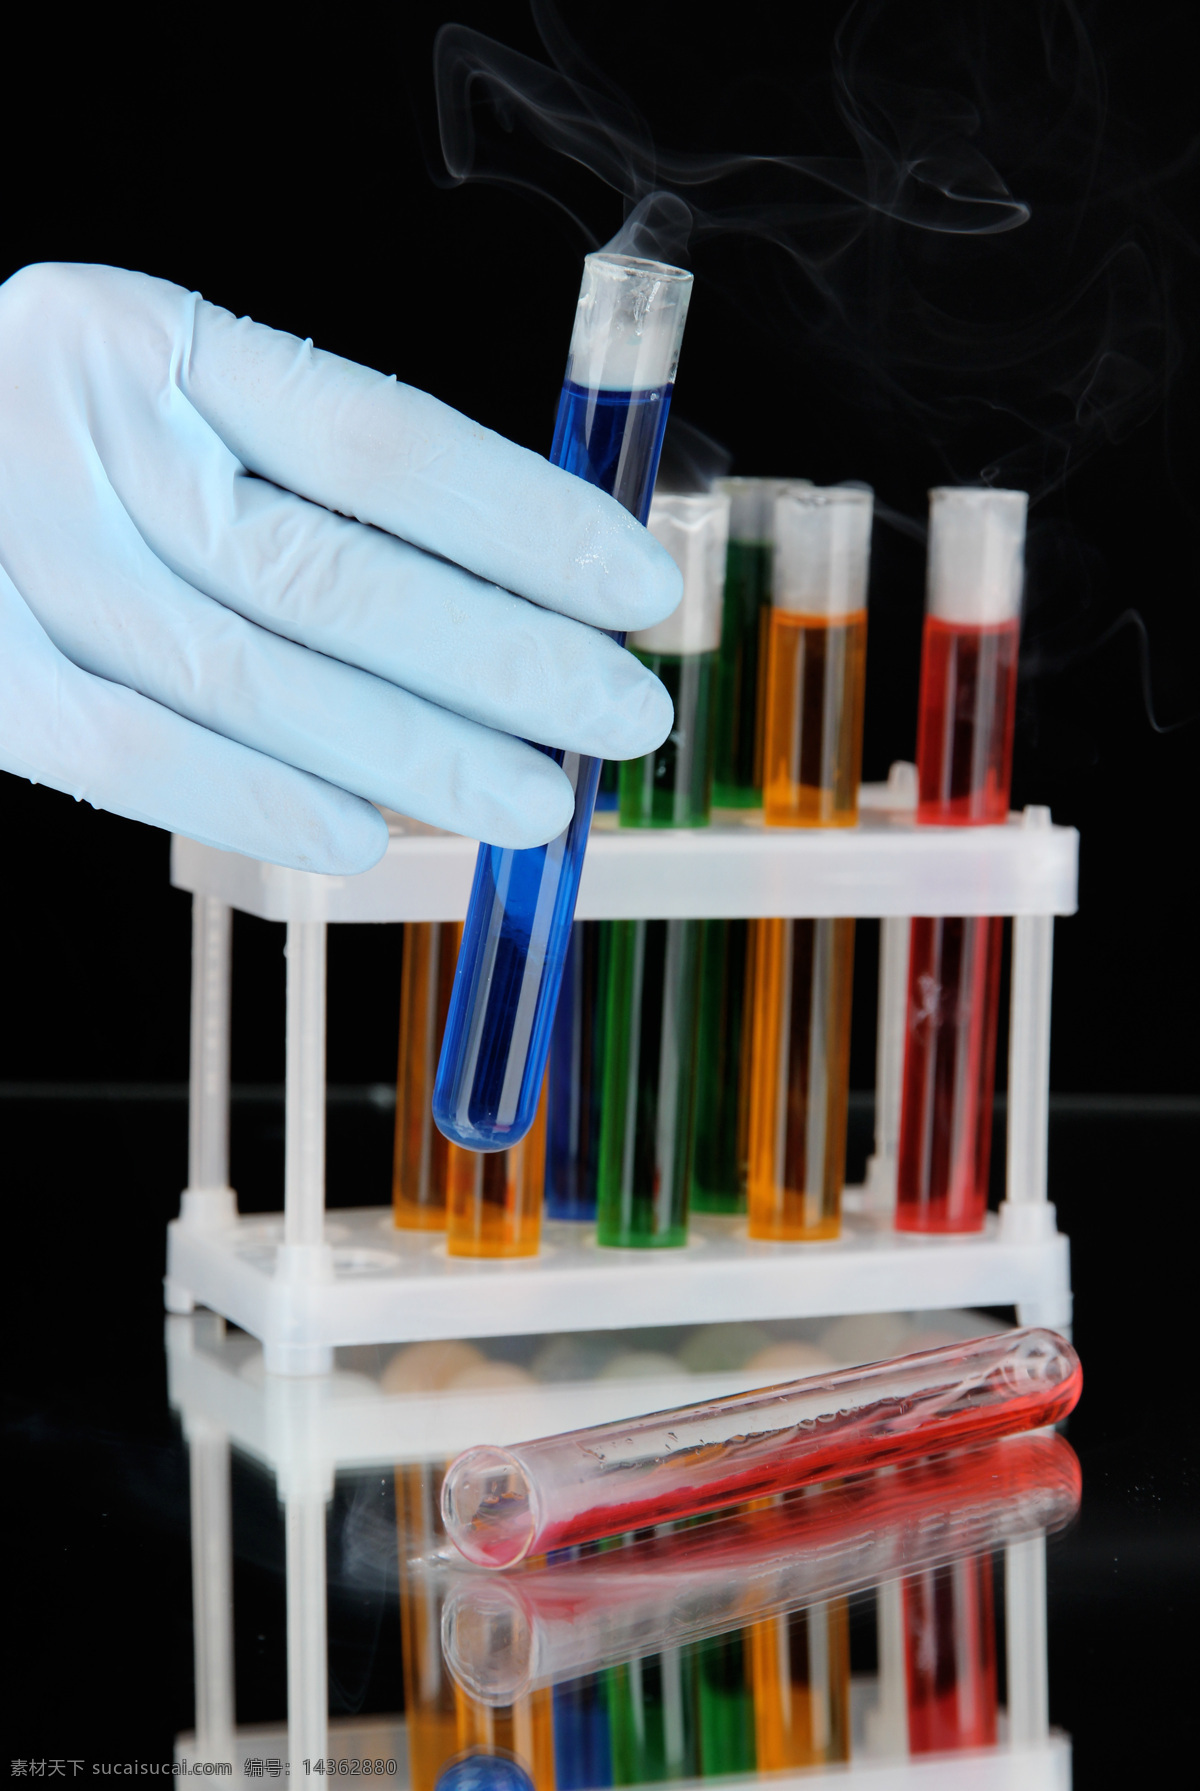 手 蓝色 试管 试剂 量杯 试验器皿 液体 化学素材 化学试验 科学研究 生物科技 科技图片 现代科技